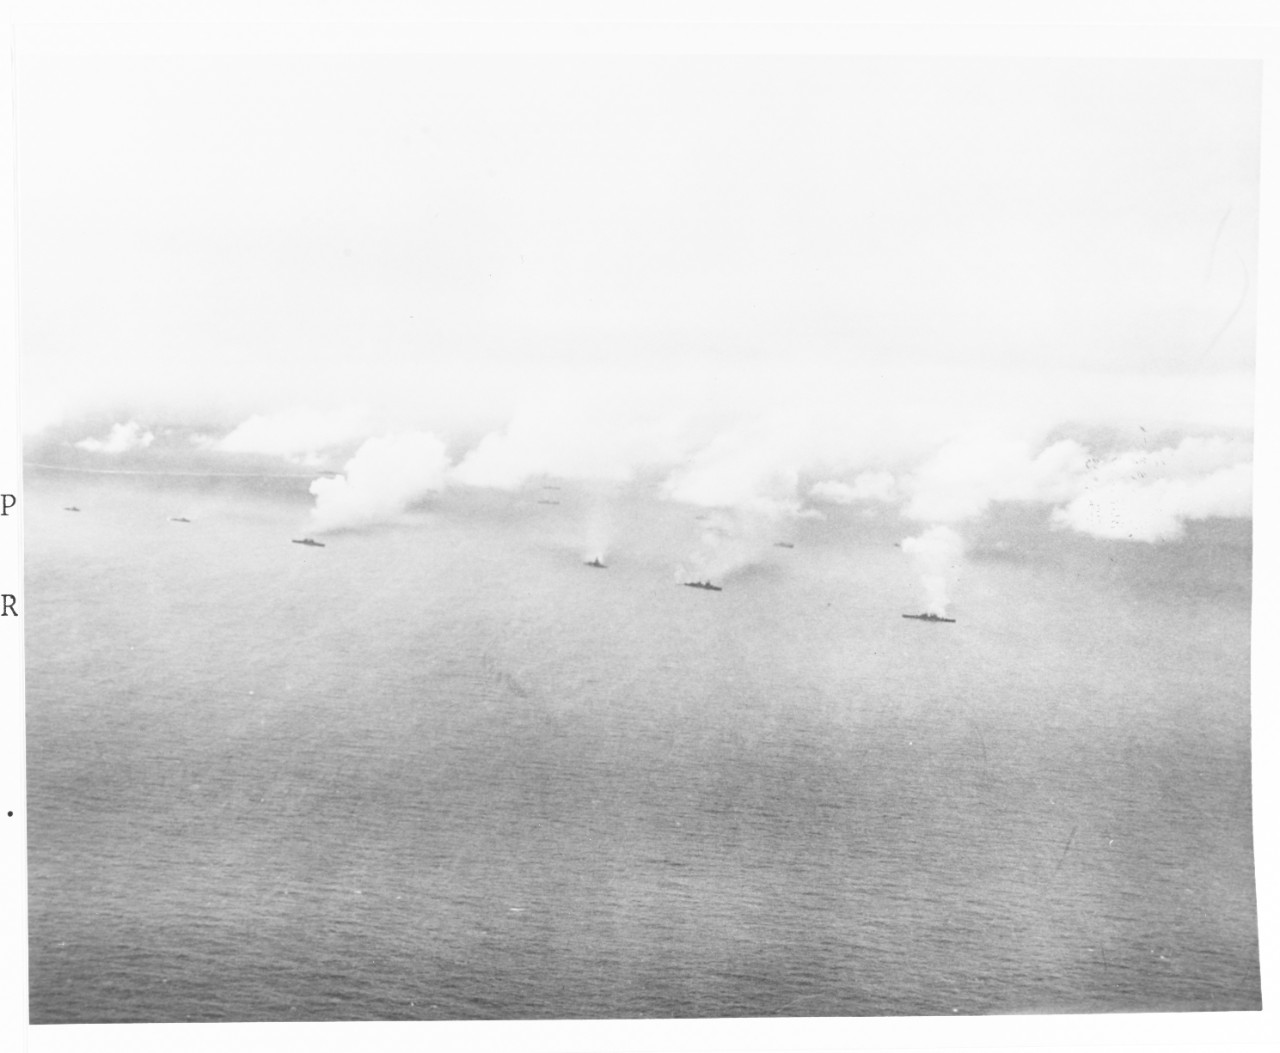 Kwajalein Operation, 1944